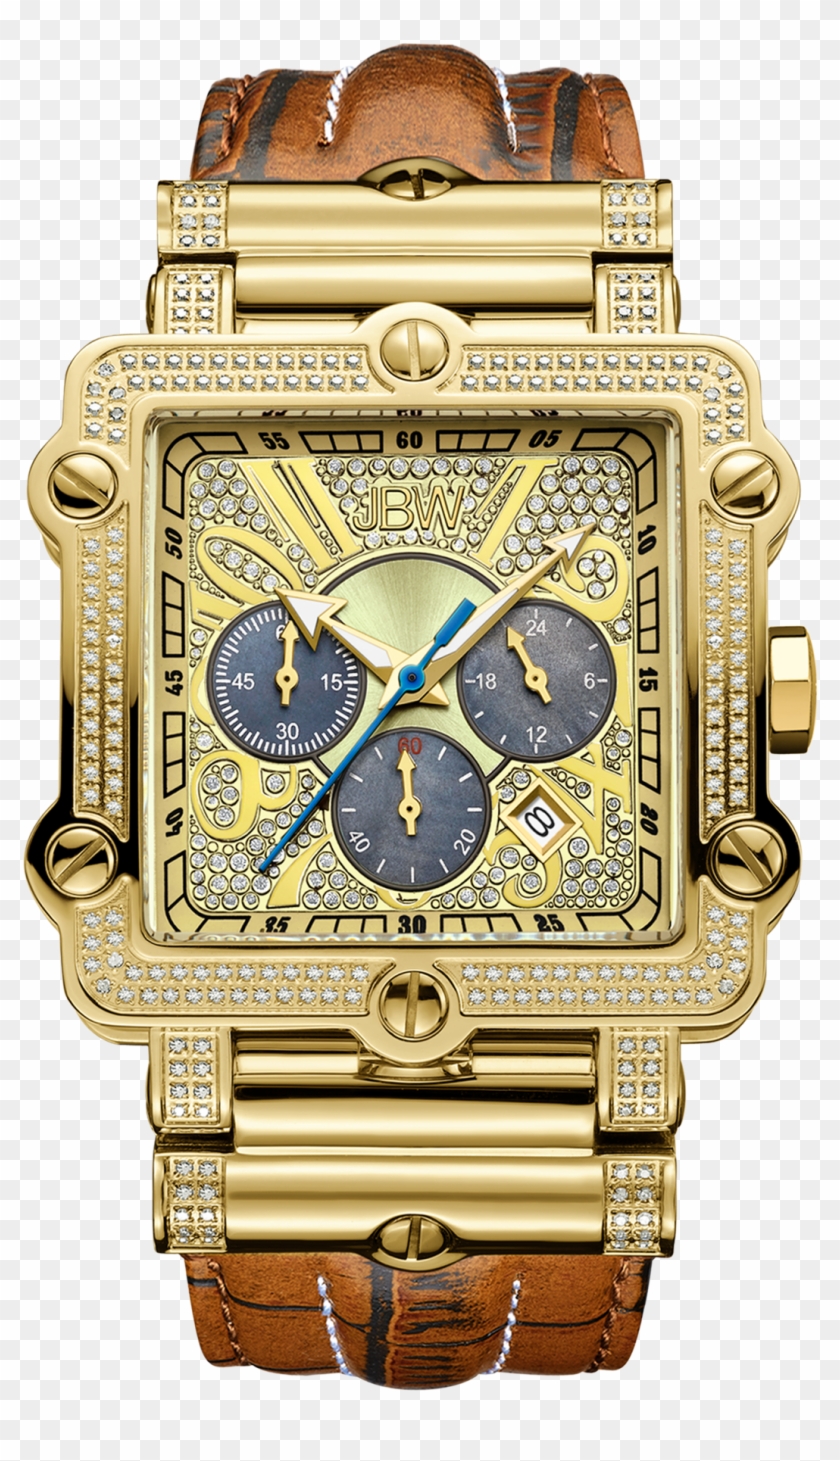 Phantom Watch, Jbw Watches - Jbw Watches Clipart #1418463